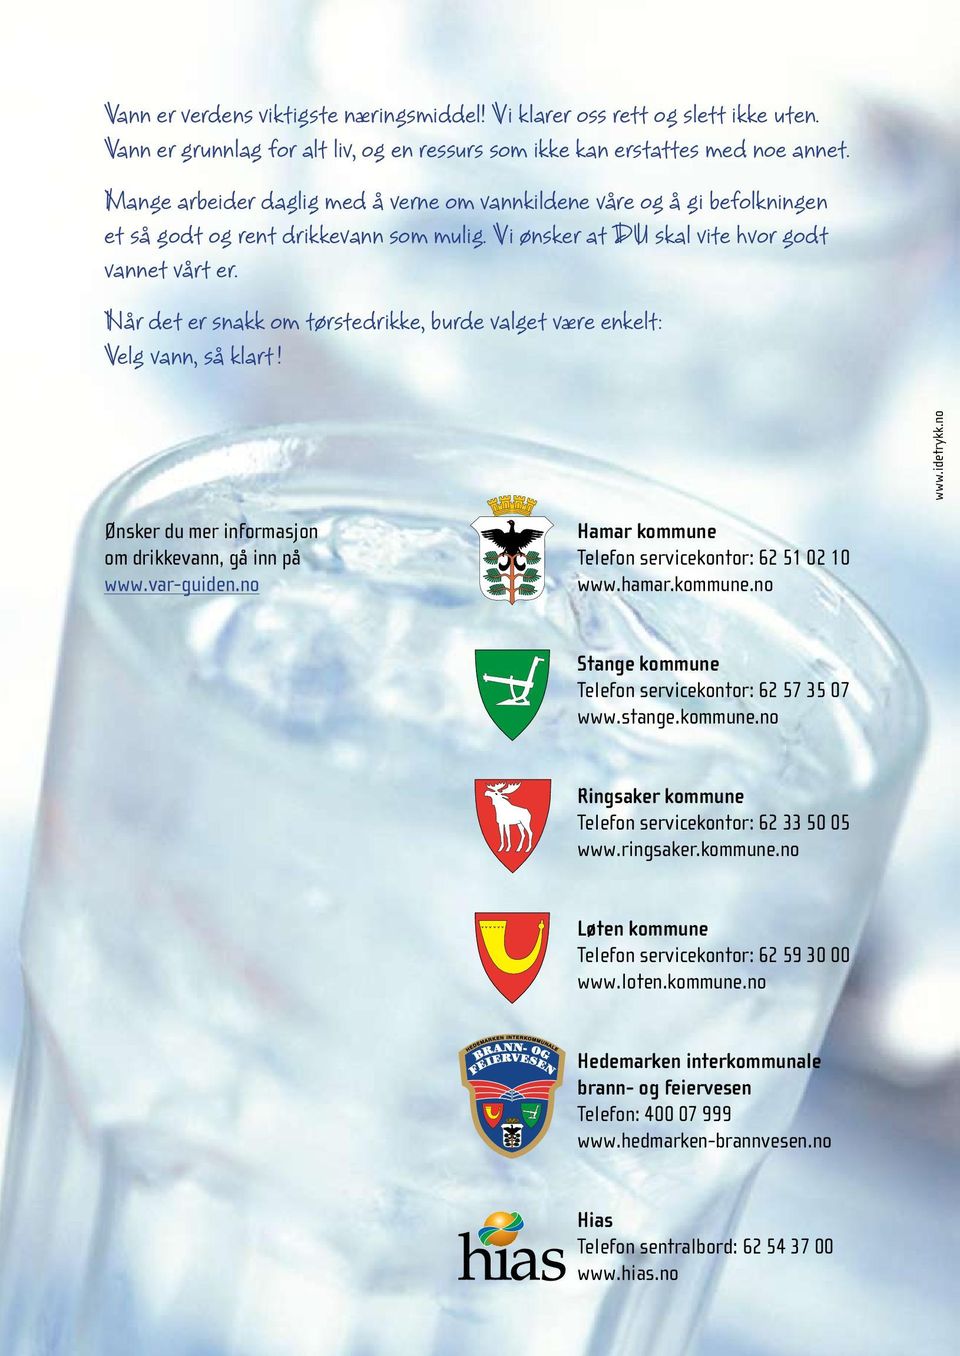 Når det er snakk om tørstedrikke, burde valget være enkelt: Velg vann, så klart! www.idetrykk.no Ønsker du mer informasjon om drikkevann, gå inn på www.var-guiden.